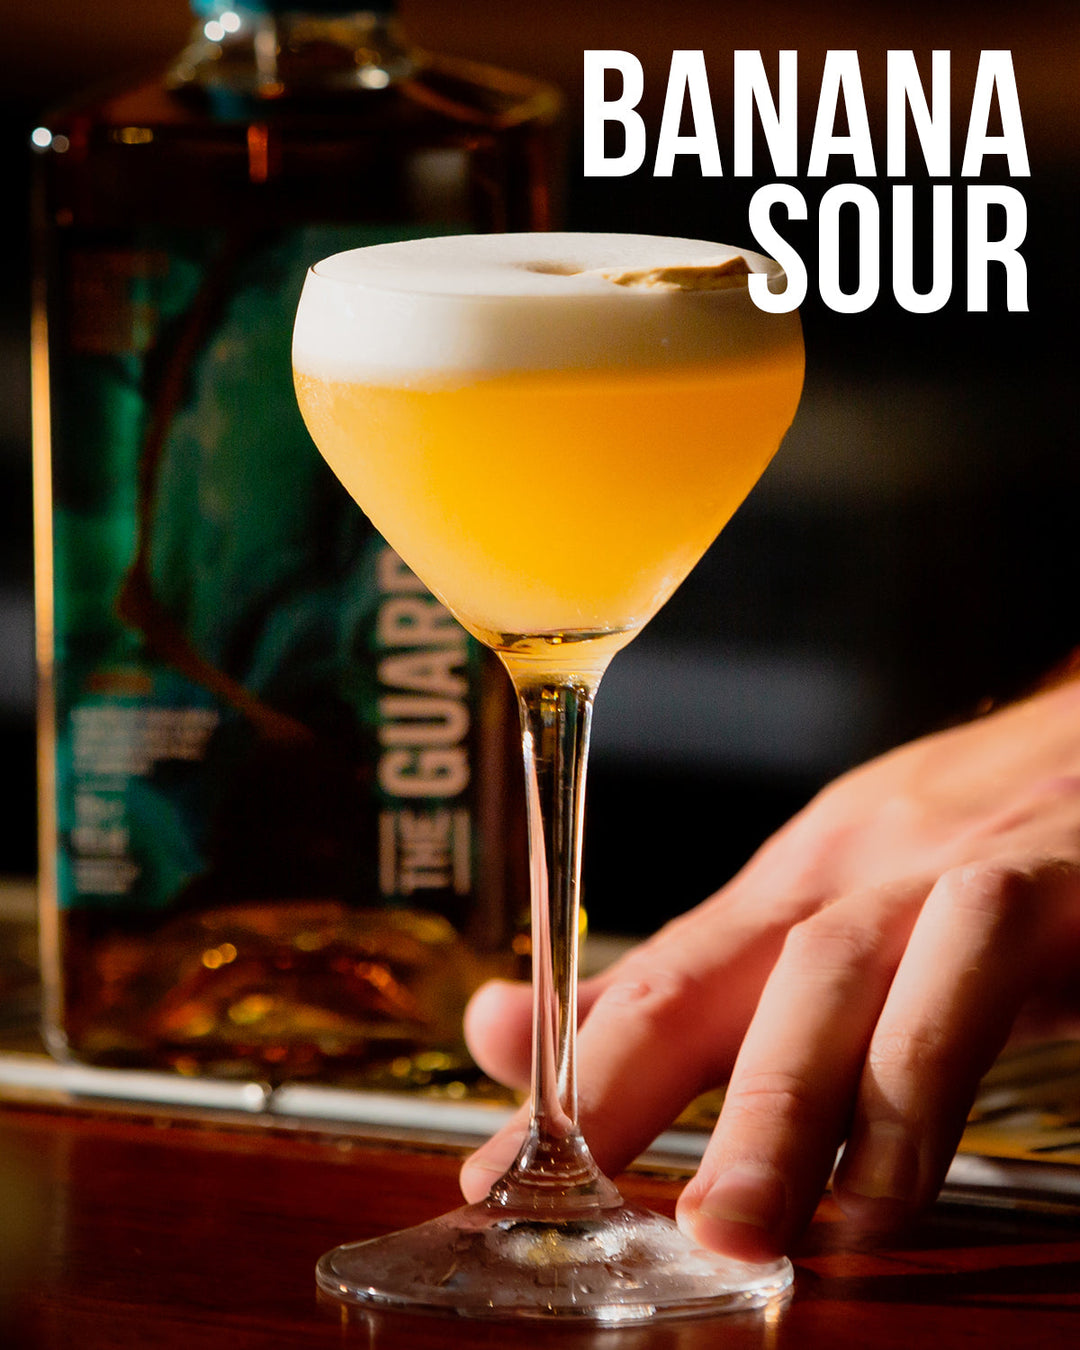 The Banana Sour | The Guard Bridge Blended Malt Whisky